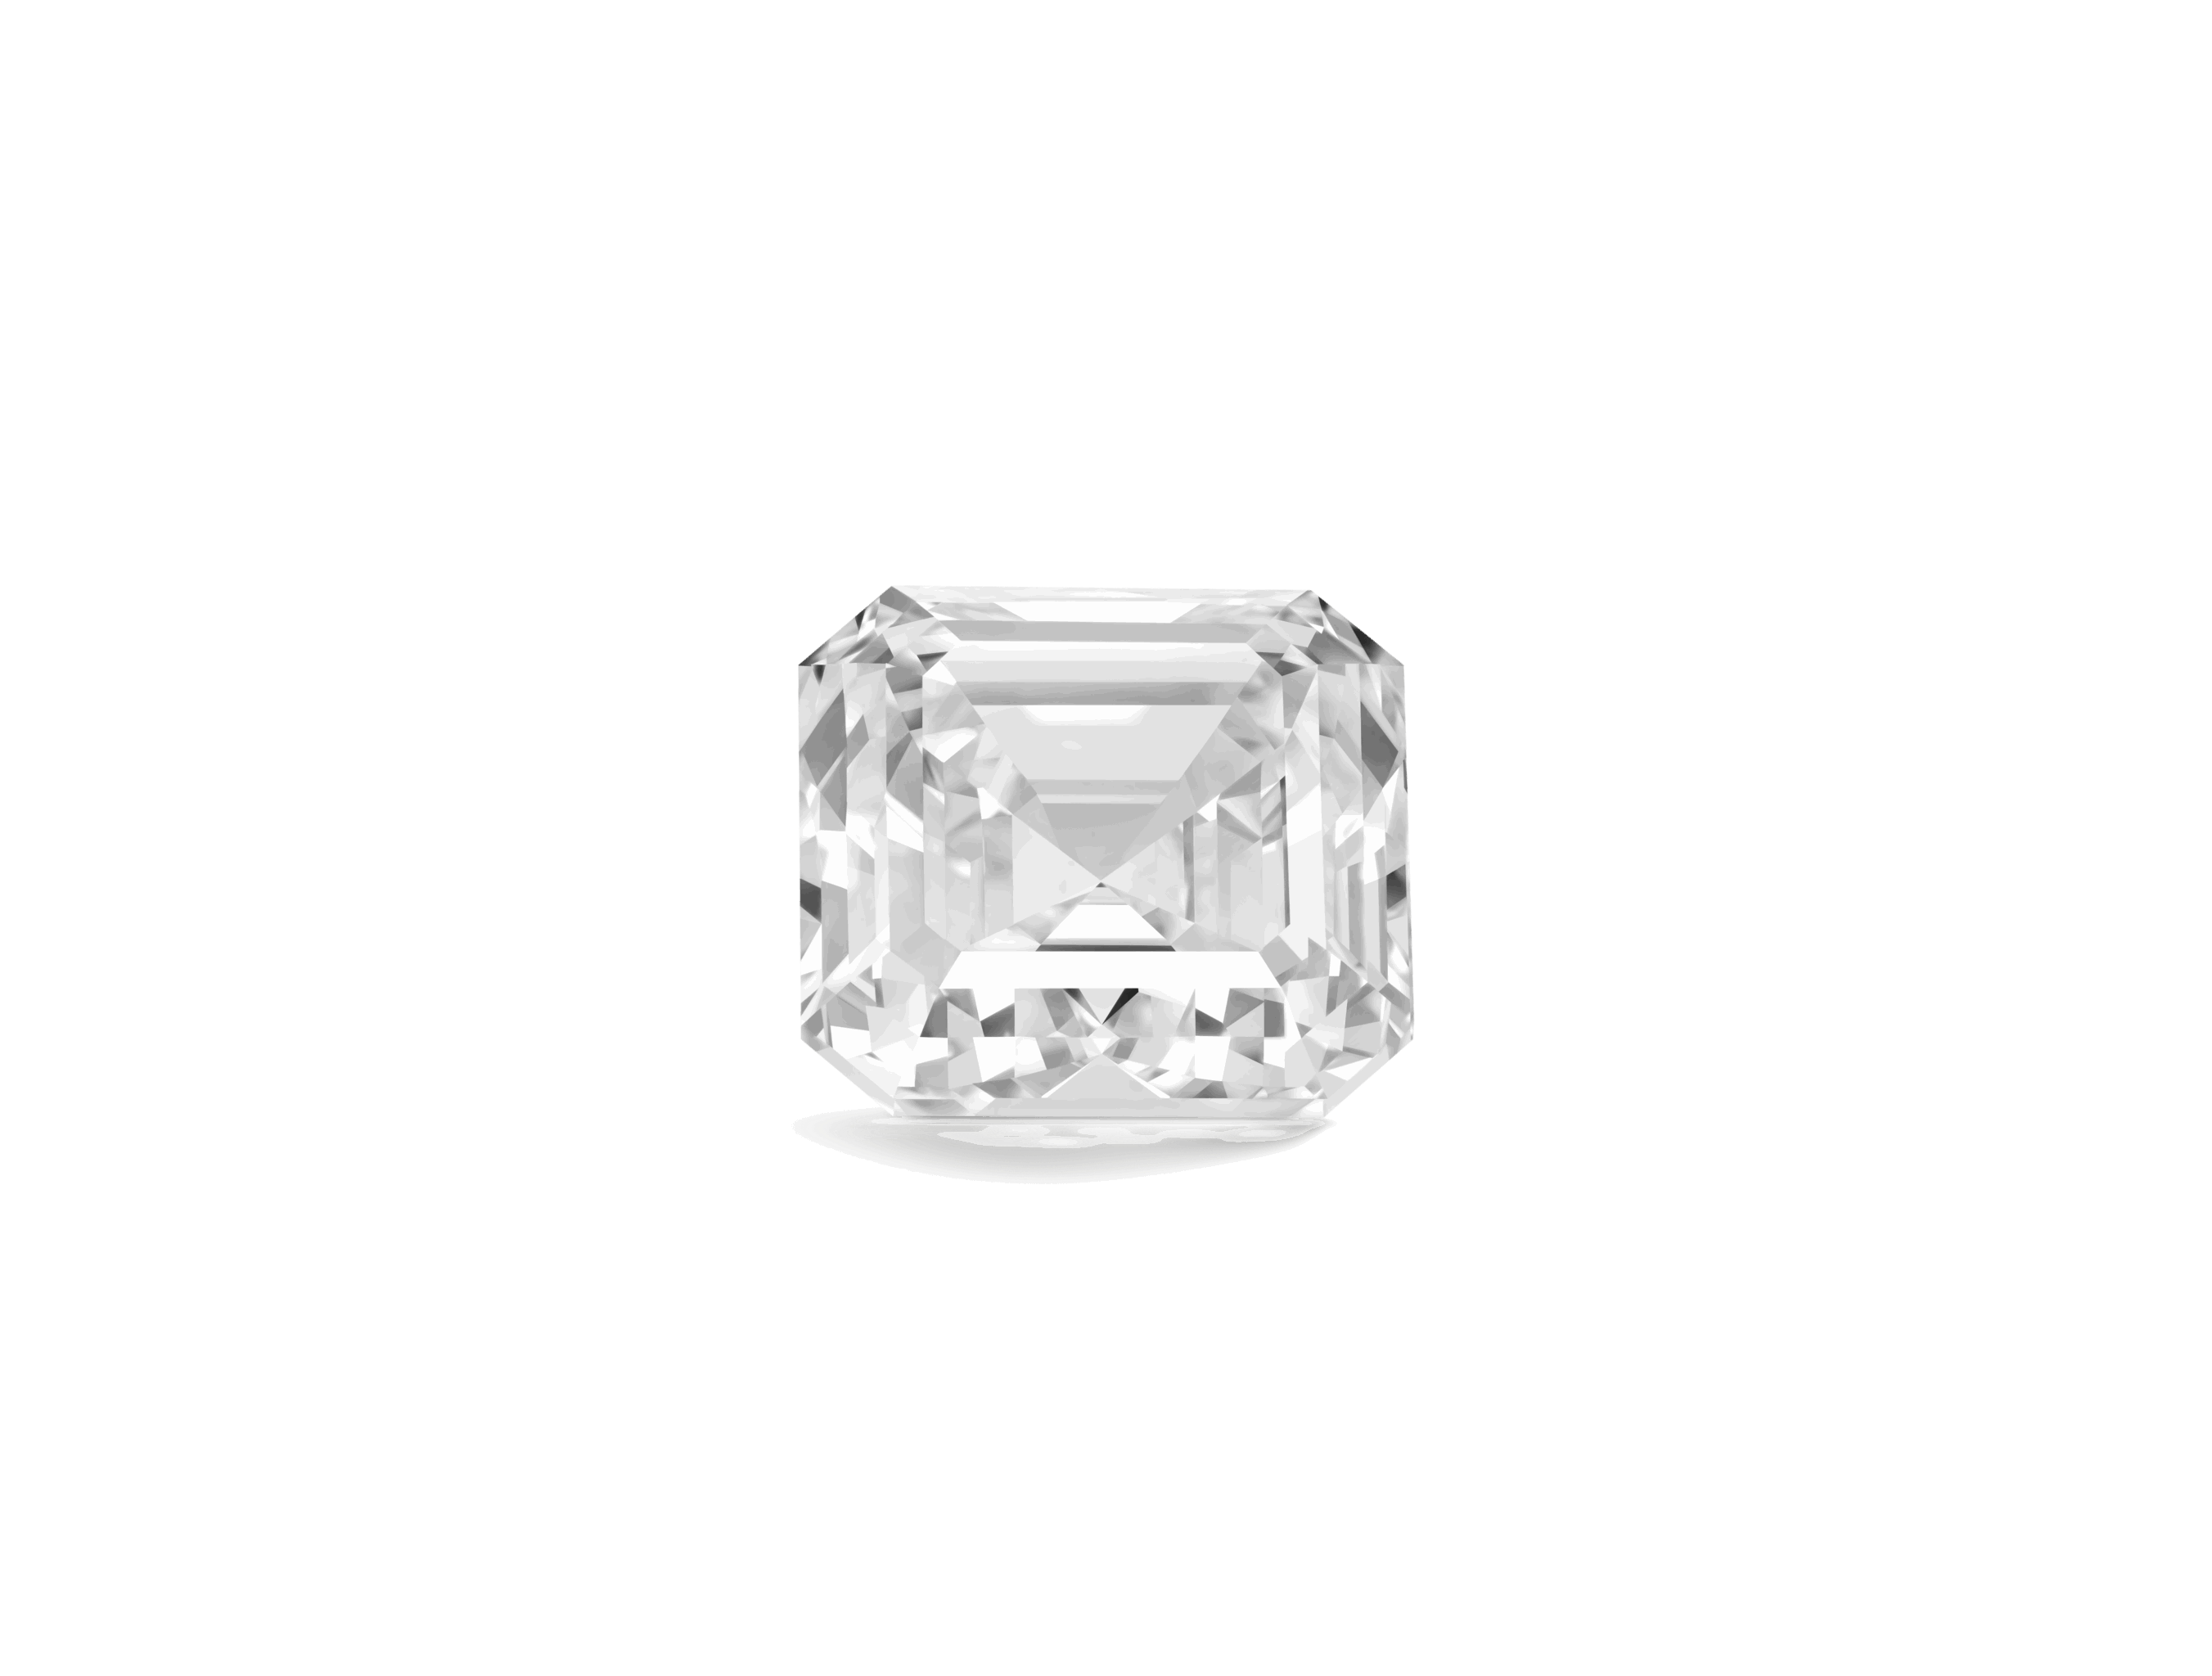 Front view of Lightbox Finest™ 2 carat white Asscher cut diamond